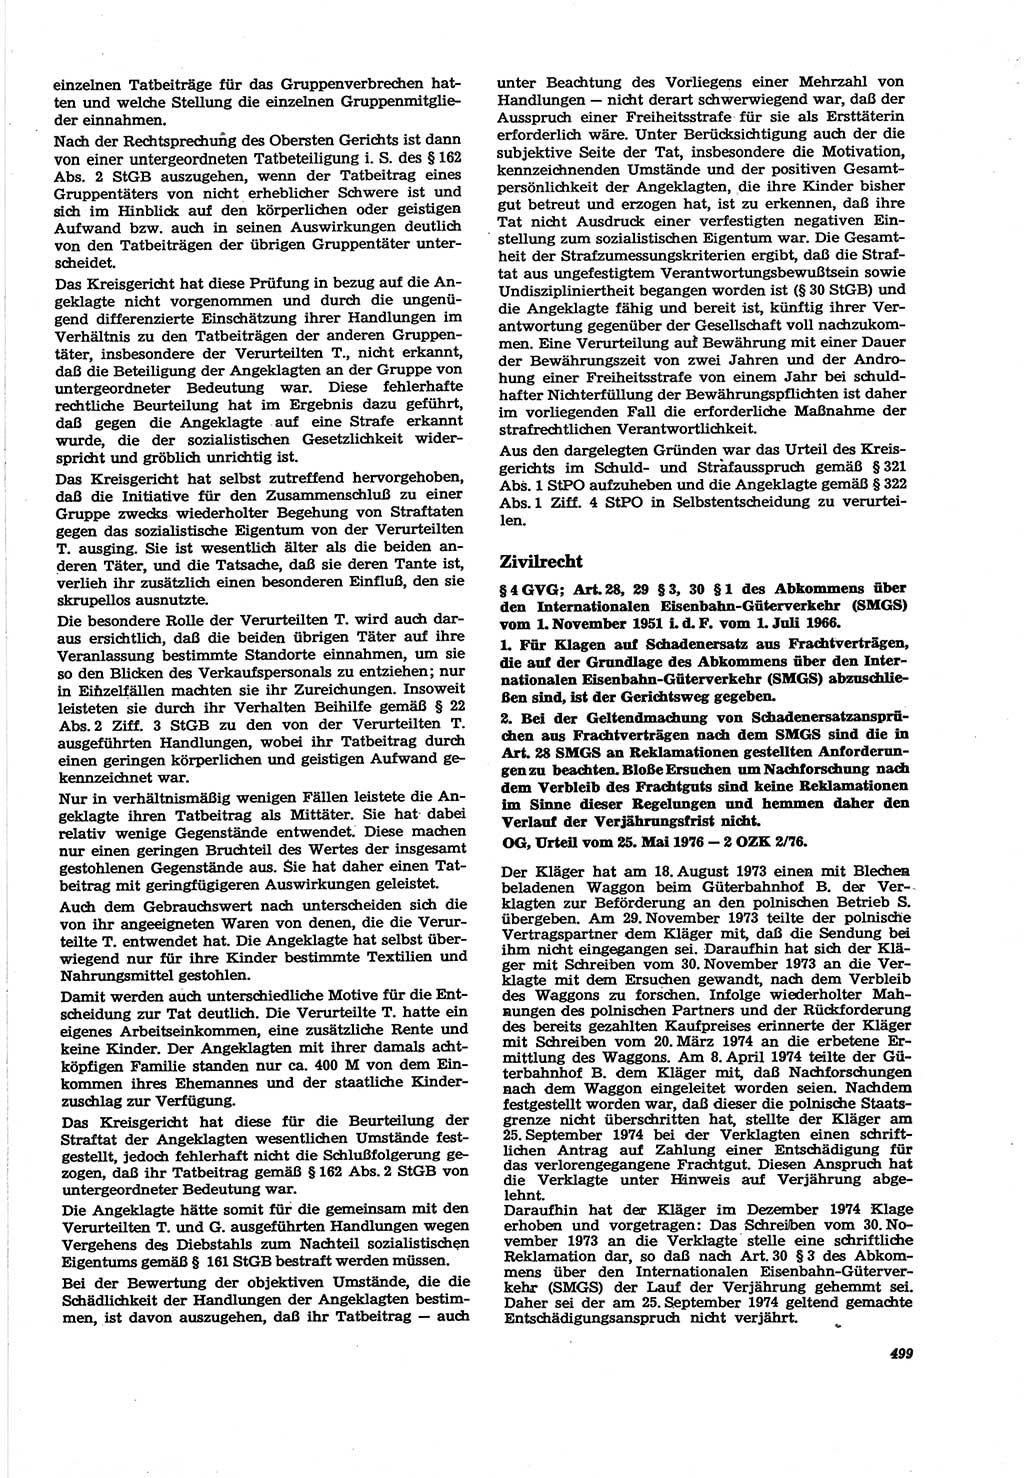 Neue Justiz (NJ), Zeitschrift für Recht und Rechtswissenschaft [Deutsche Demokratische Republik (DDR)], 30. Jahrgang 1976, Seite 499 (NJ DDR 1976, S. 499)